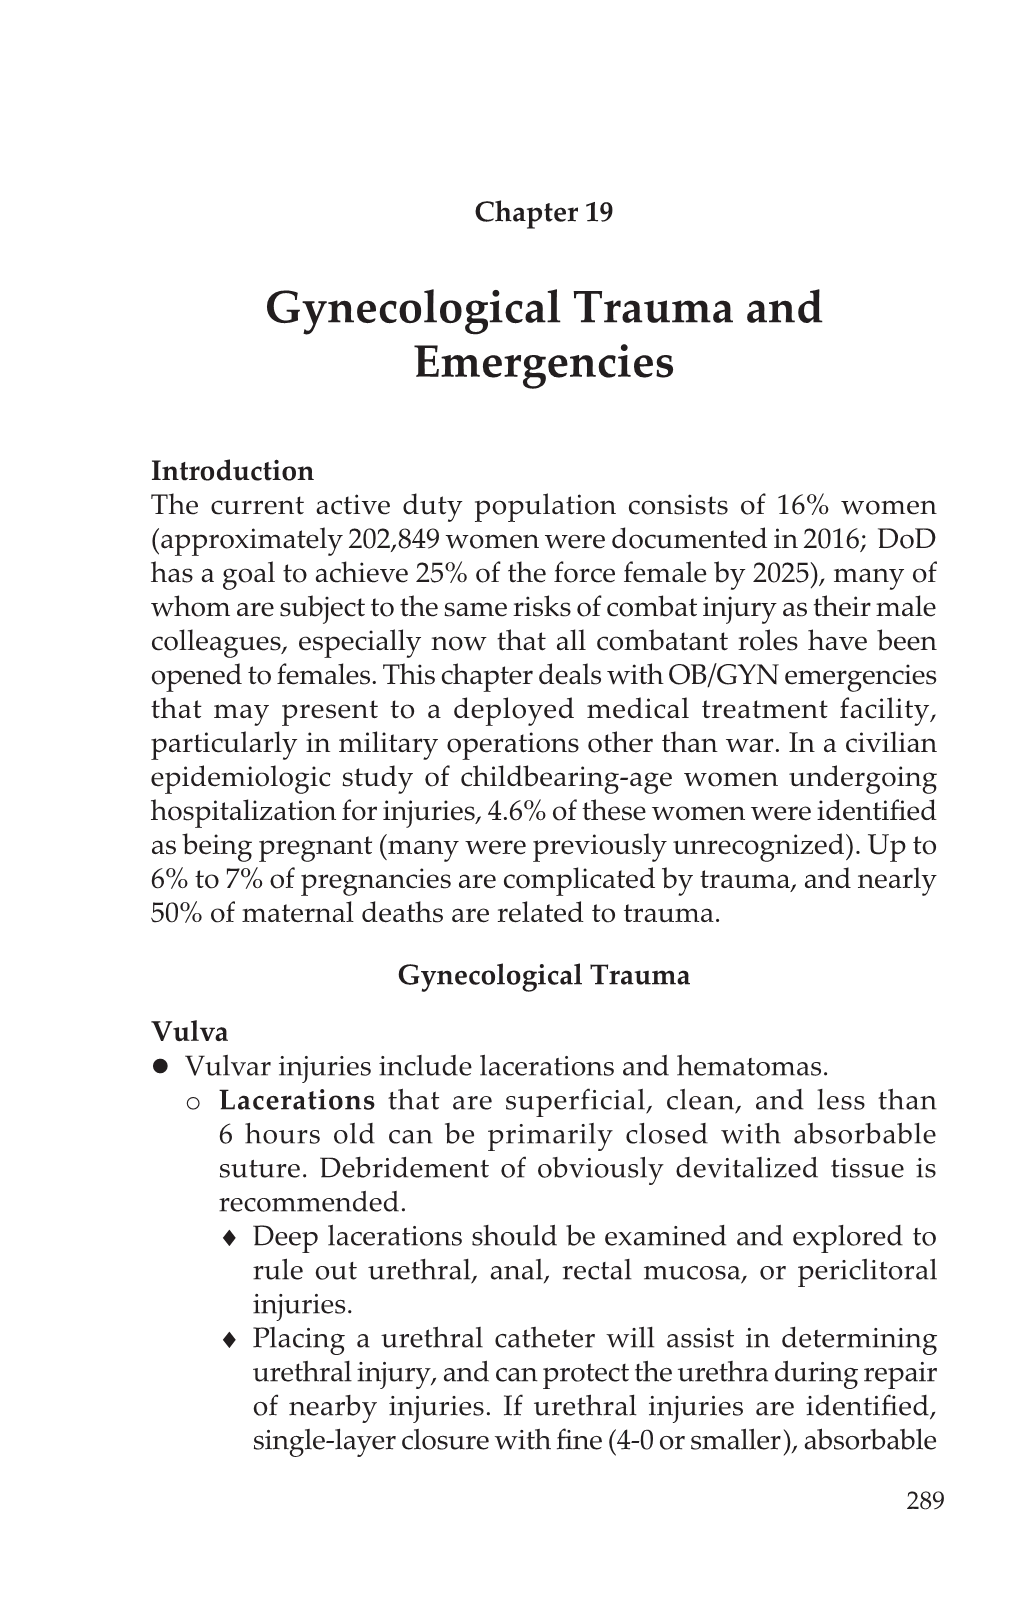 Gynecological Trauma and Emergencies